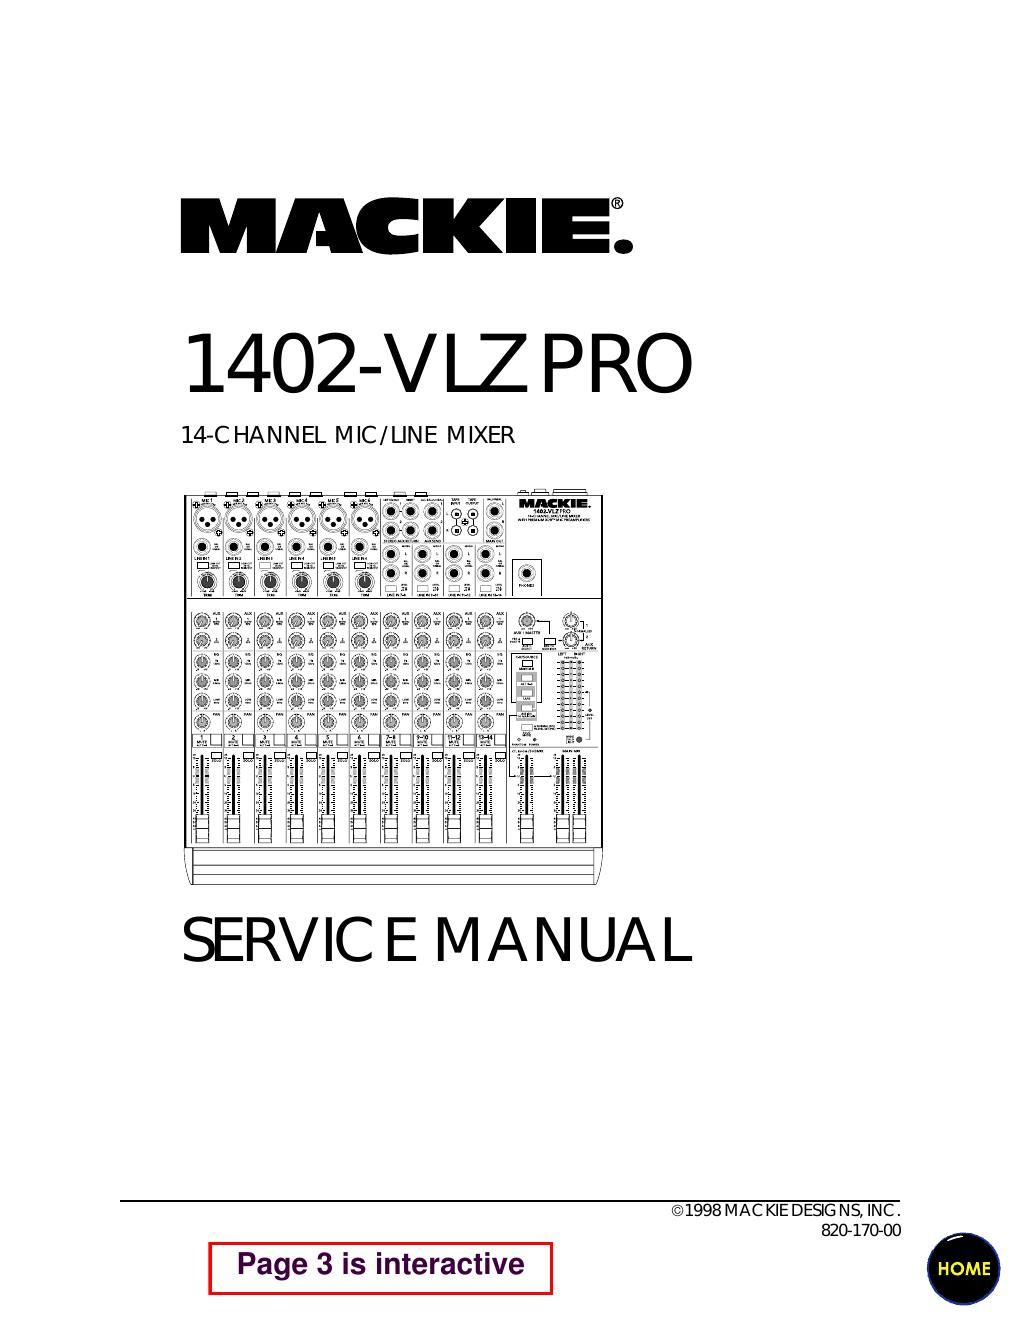 Mackie 1402 VLZ Pro Service Manual